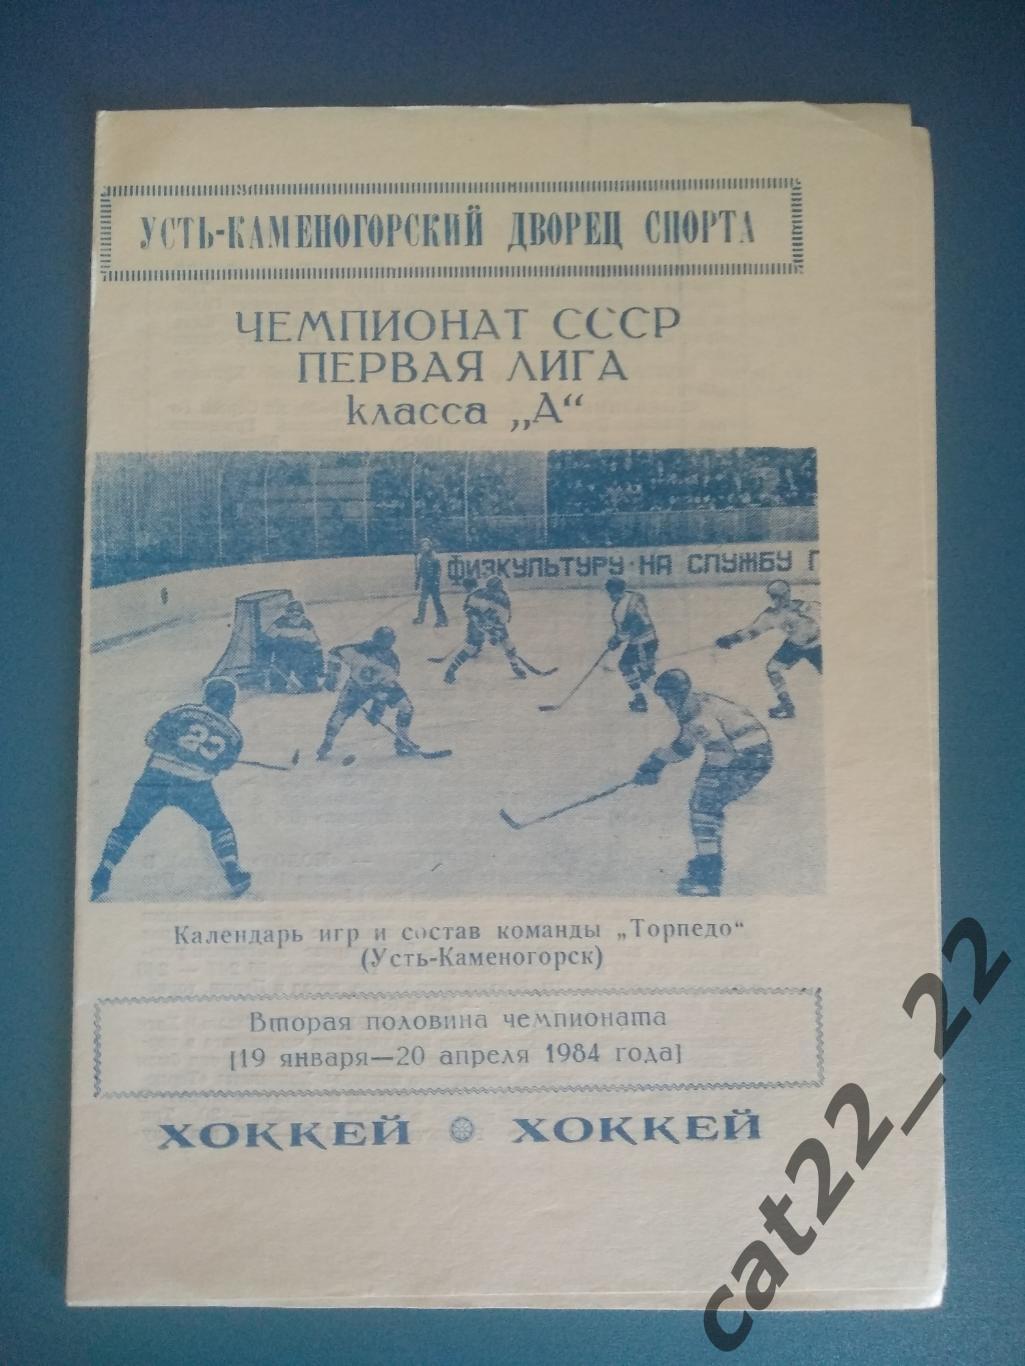 Буклет: Хоккей. Усть - Каменогорск СССР/Казахстан 19.01 - 20.04.1984